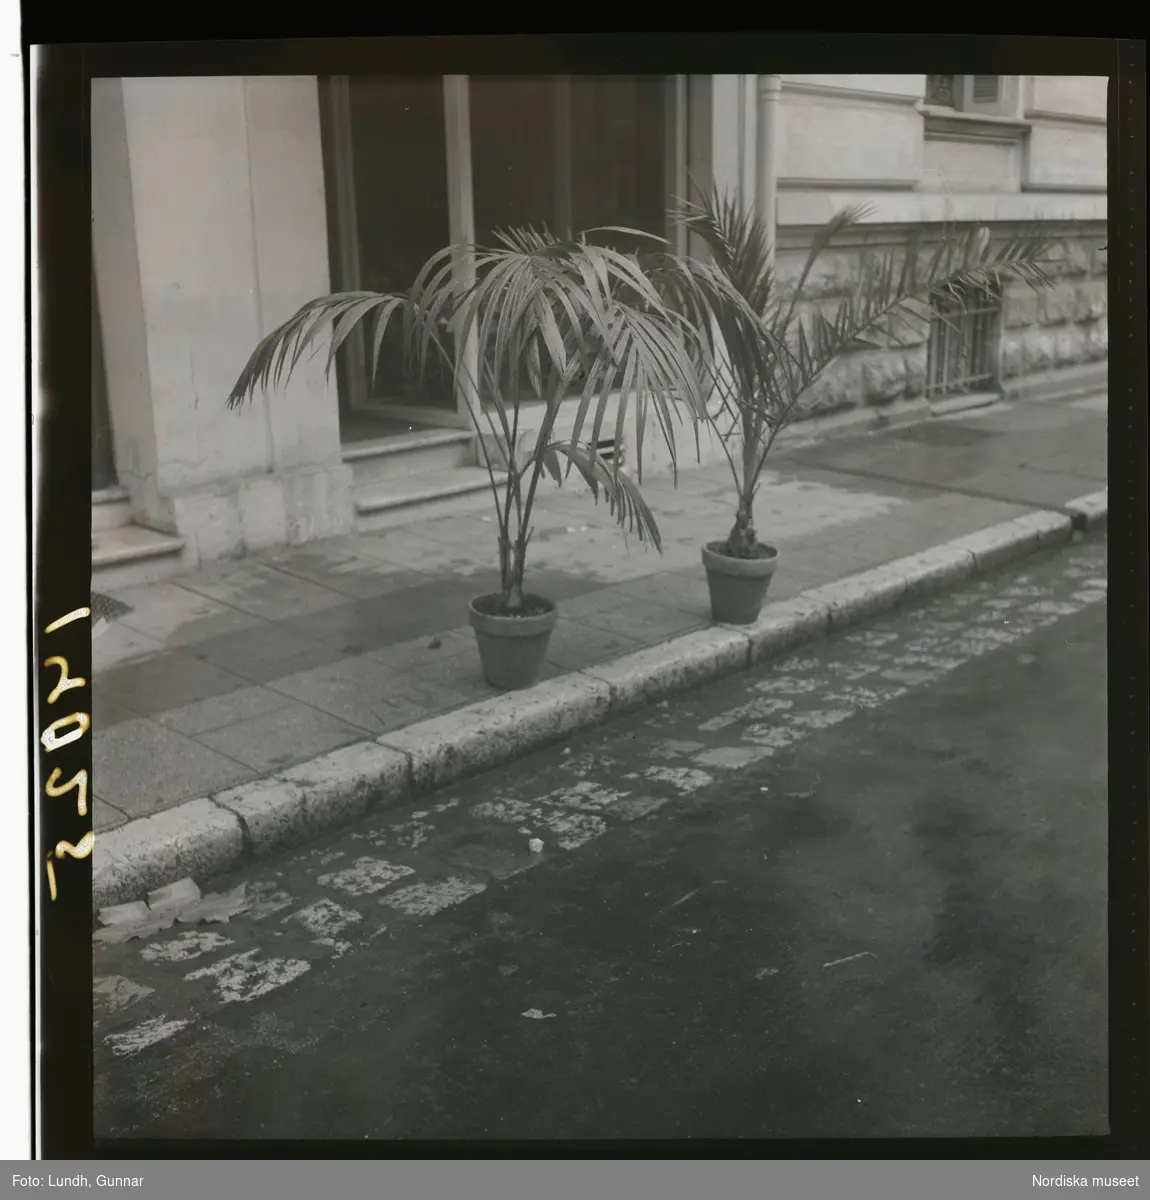 1950. Frankrike. Två palmer i kruka utanför hus